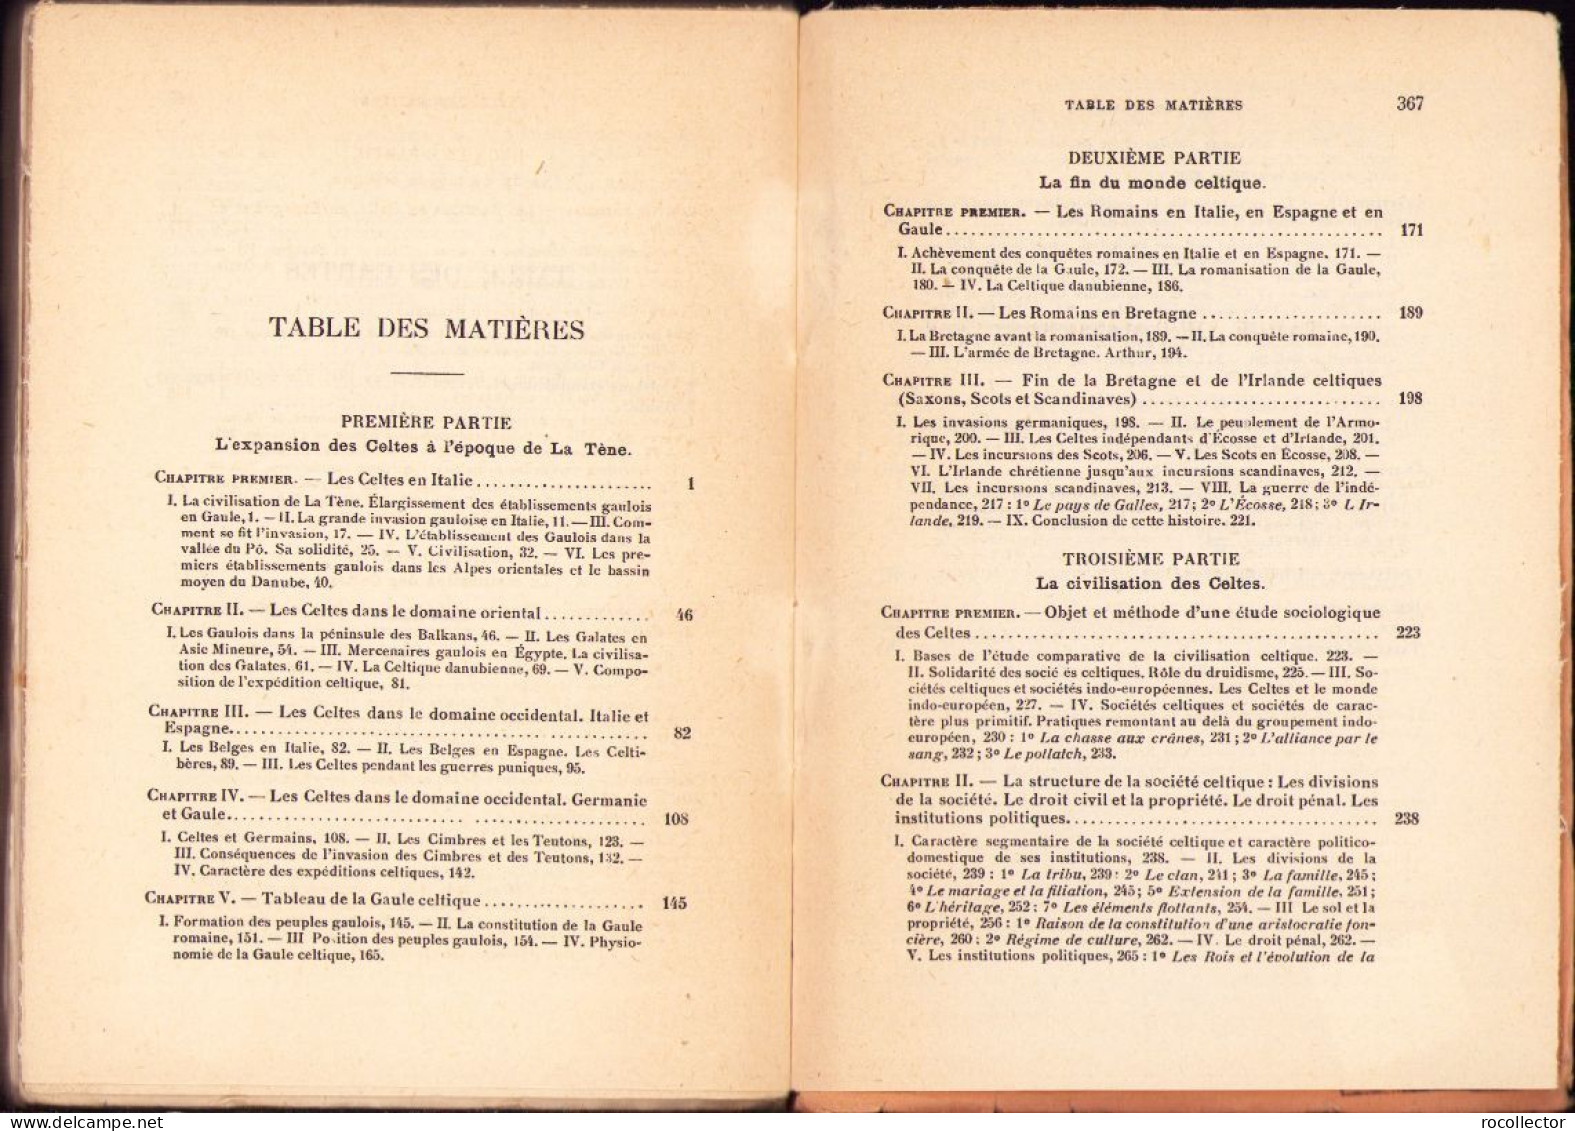 Les celtes depuis l’epoque de La Tene et la civilisation celtique par Henri Hubert, 1932 642SP